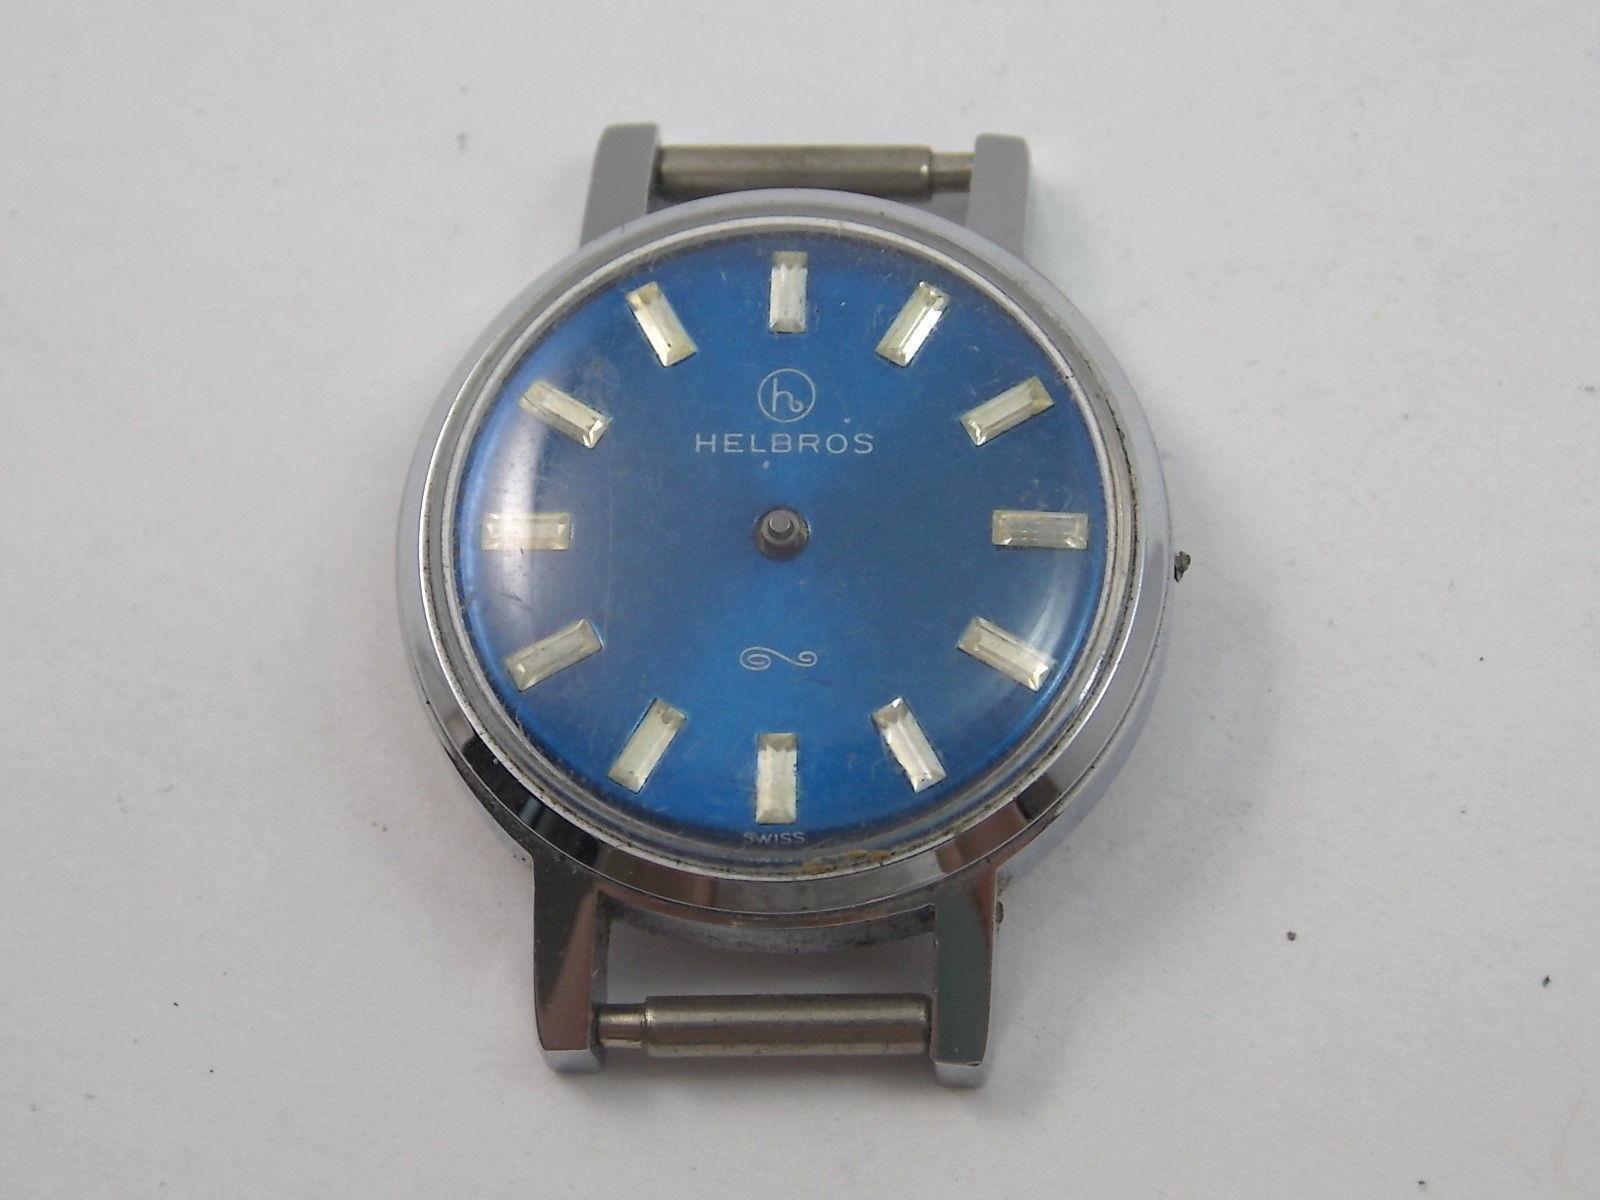 Damen Vintage Uhr Gehäuse Helbros Silberfarben Dial Kristall Uhrwerk Still Innen